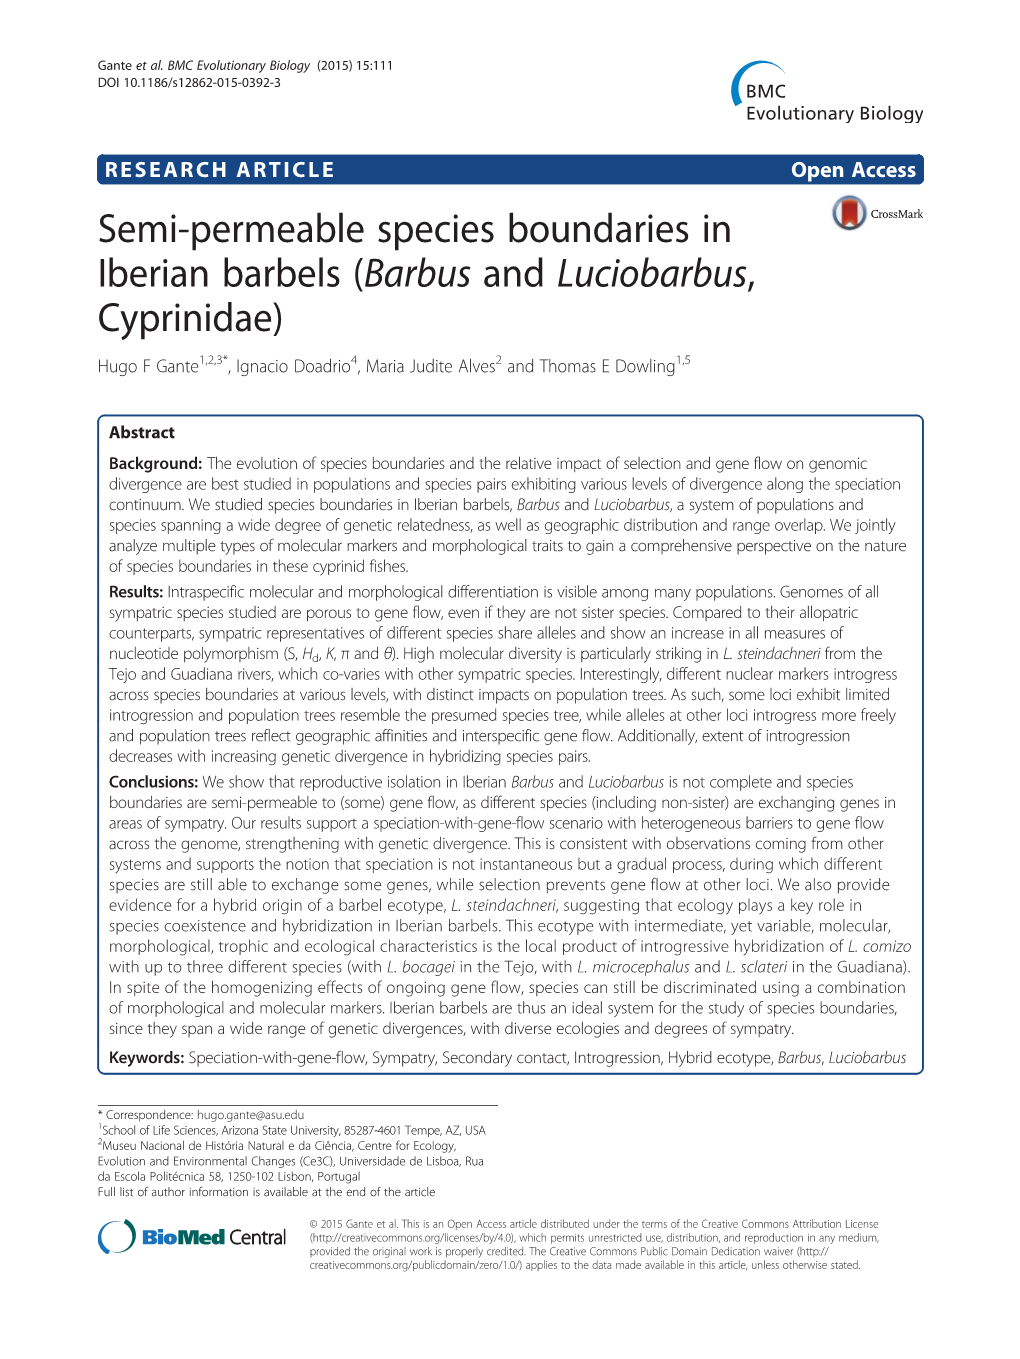 Semi-Permeable Species Boundaries in Iberian Barbels (Barbus and Luciobarbus, Cyprinidae)